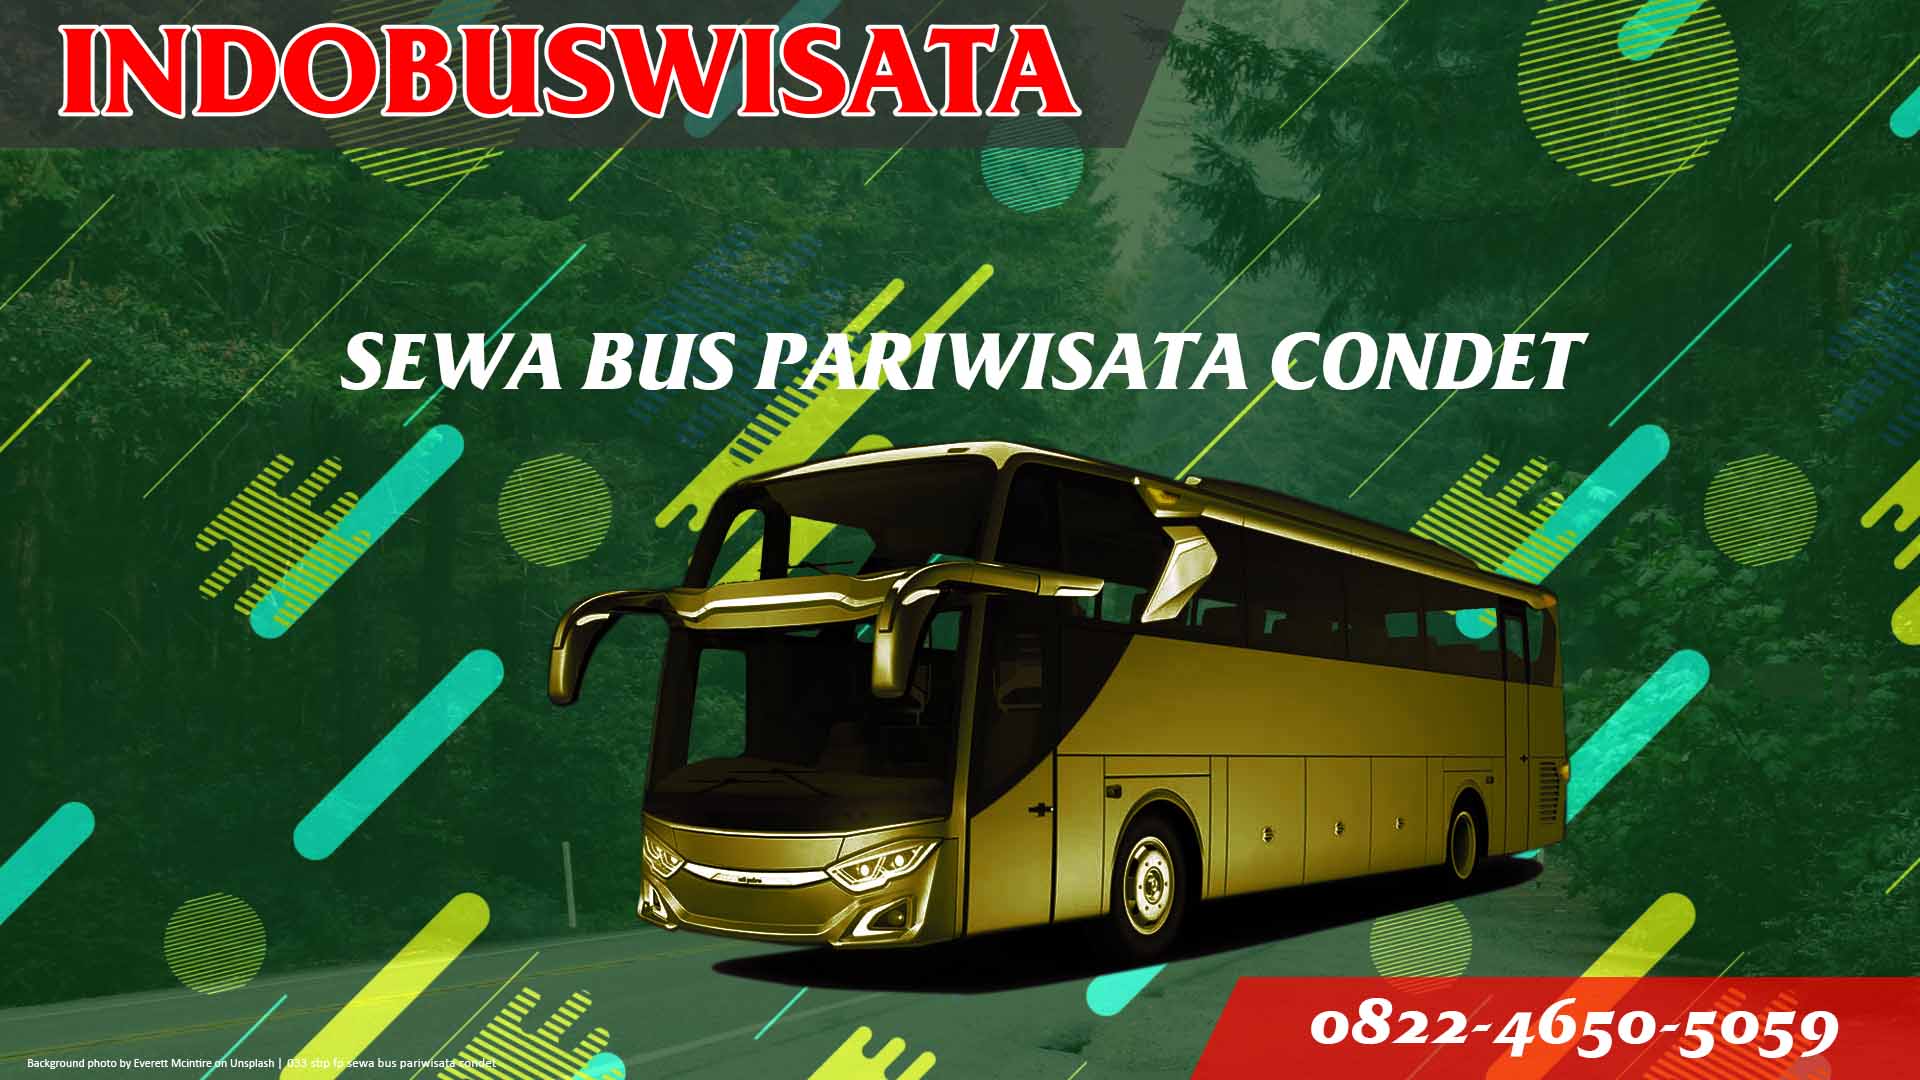 033 Sbp Fp Sewa Bus Pariwisata Condet Indobuswisata